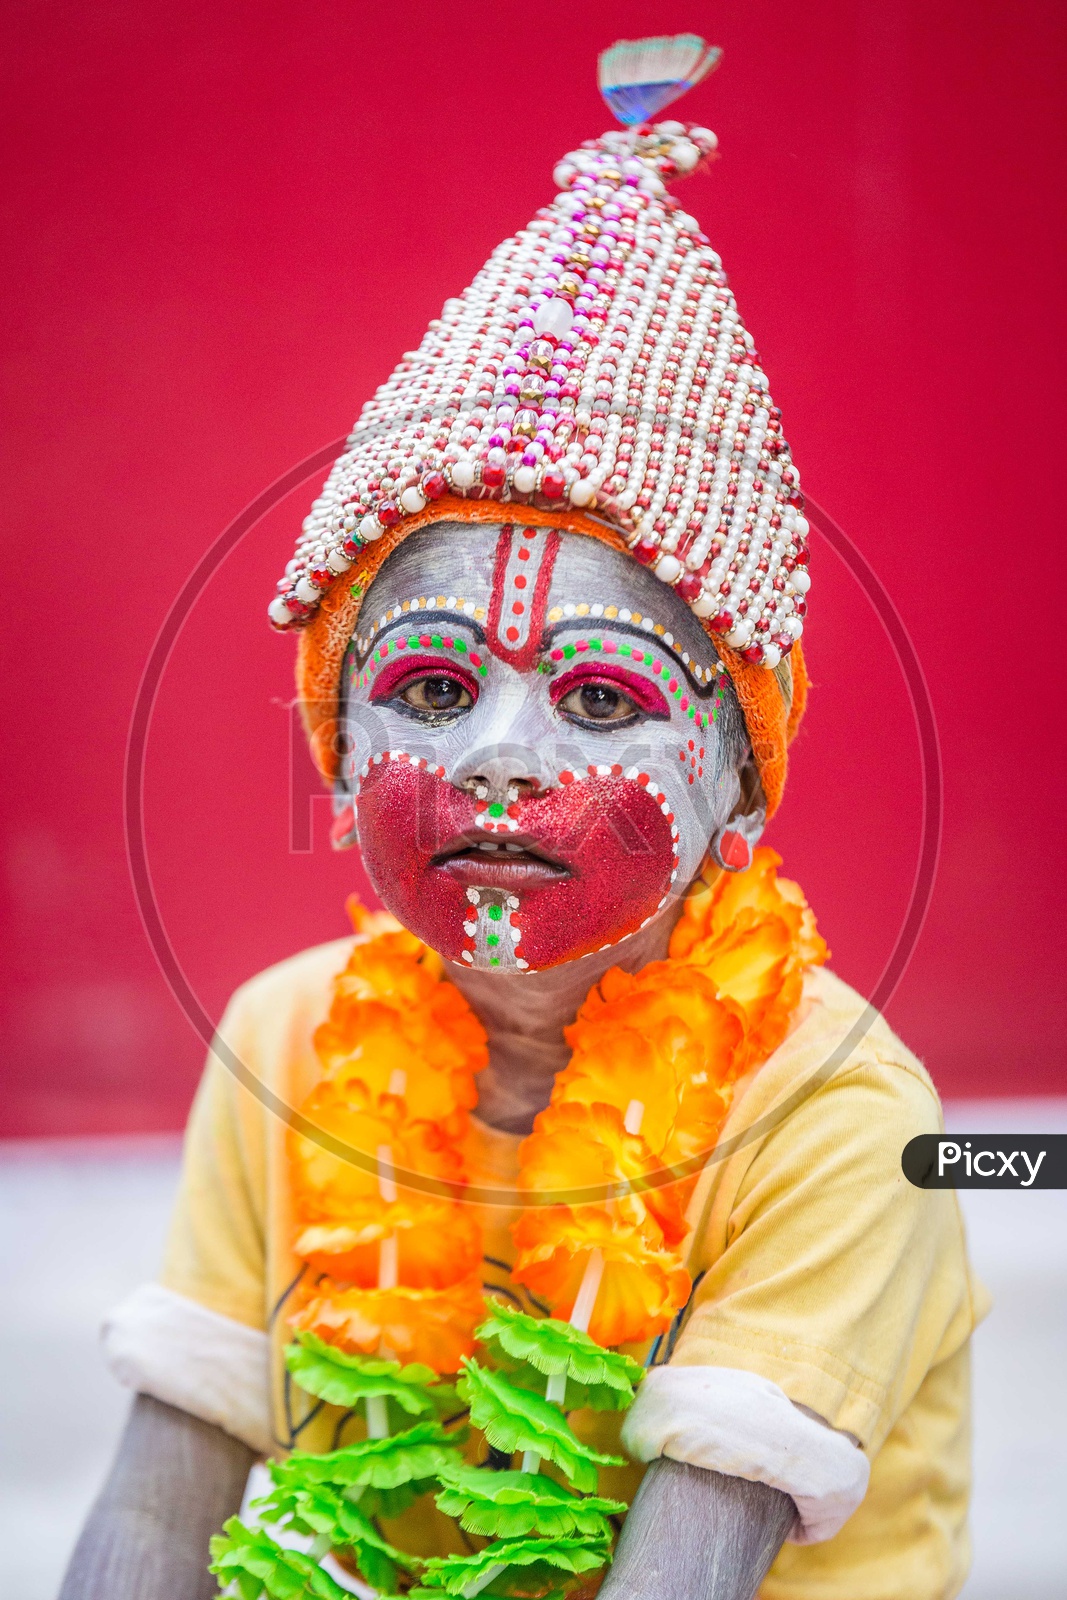 Portrait Of A Small Boy Dressed Up as  Hindu God Hanuman